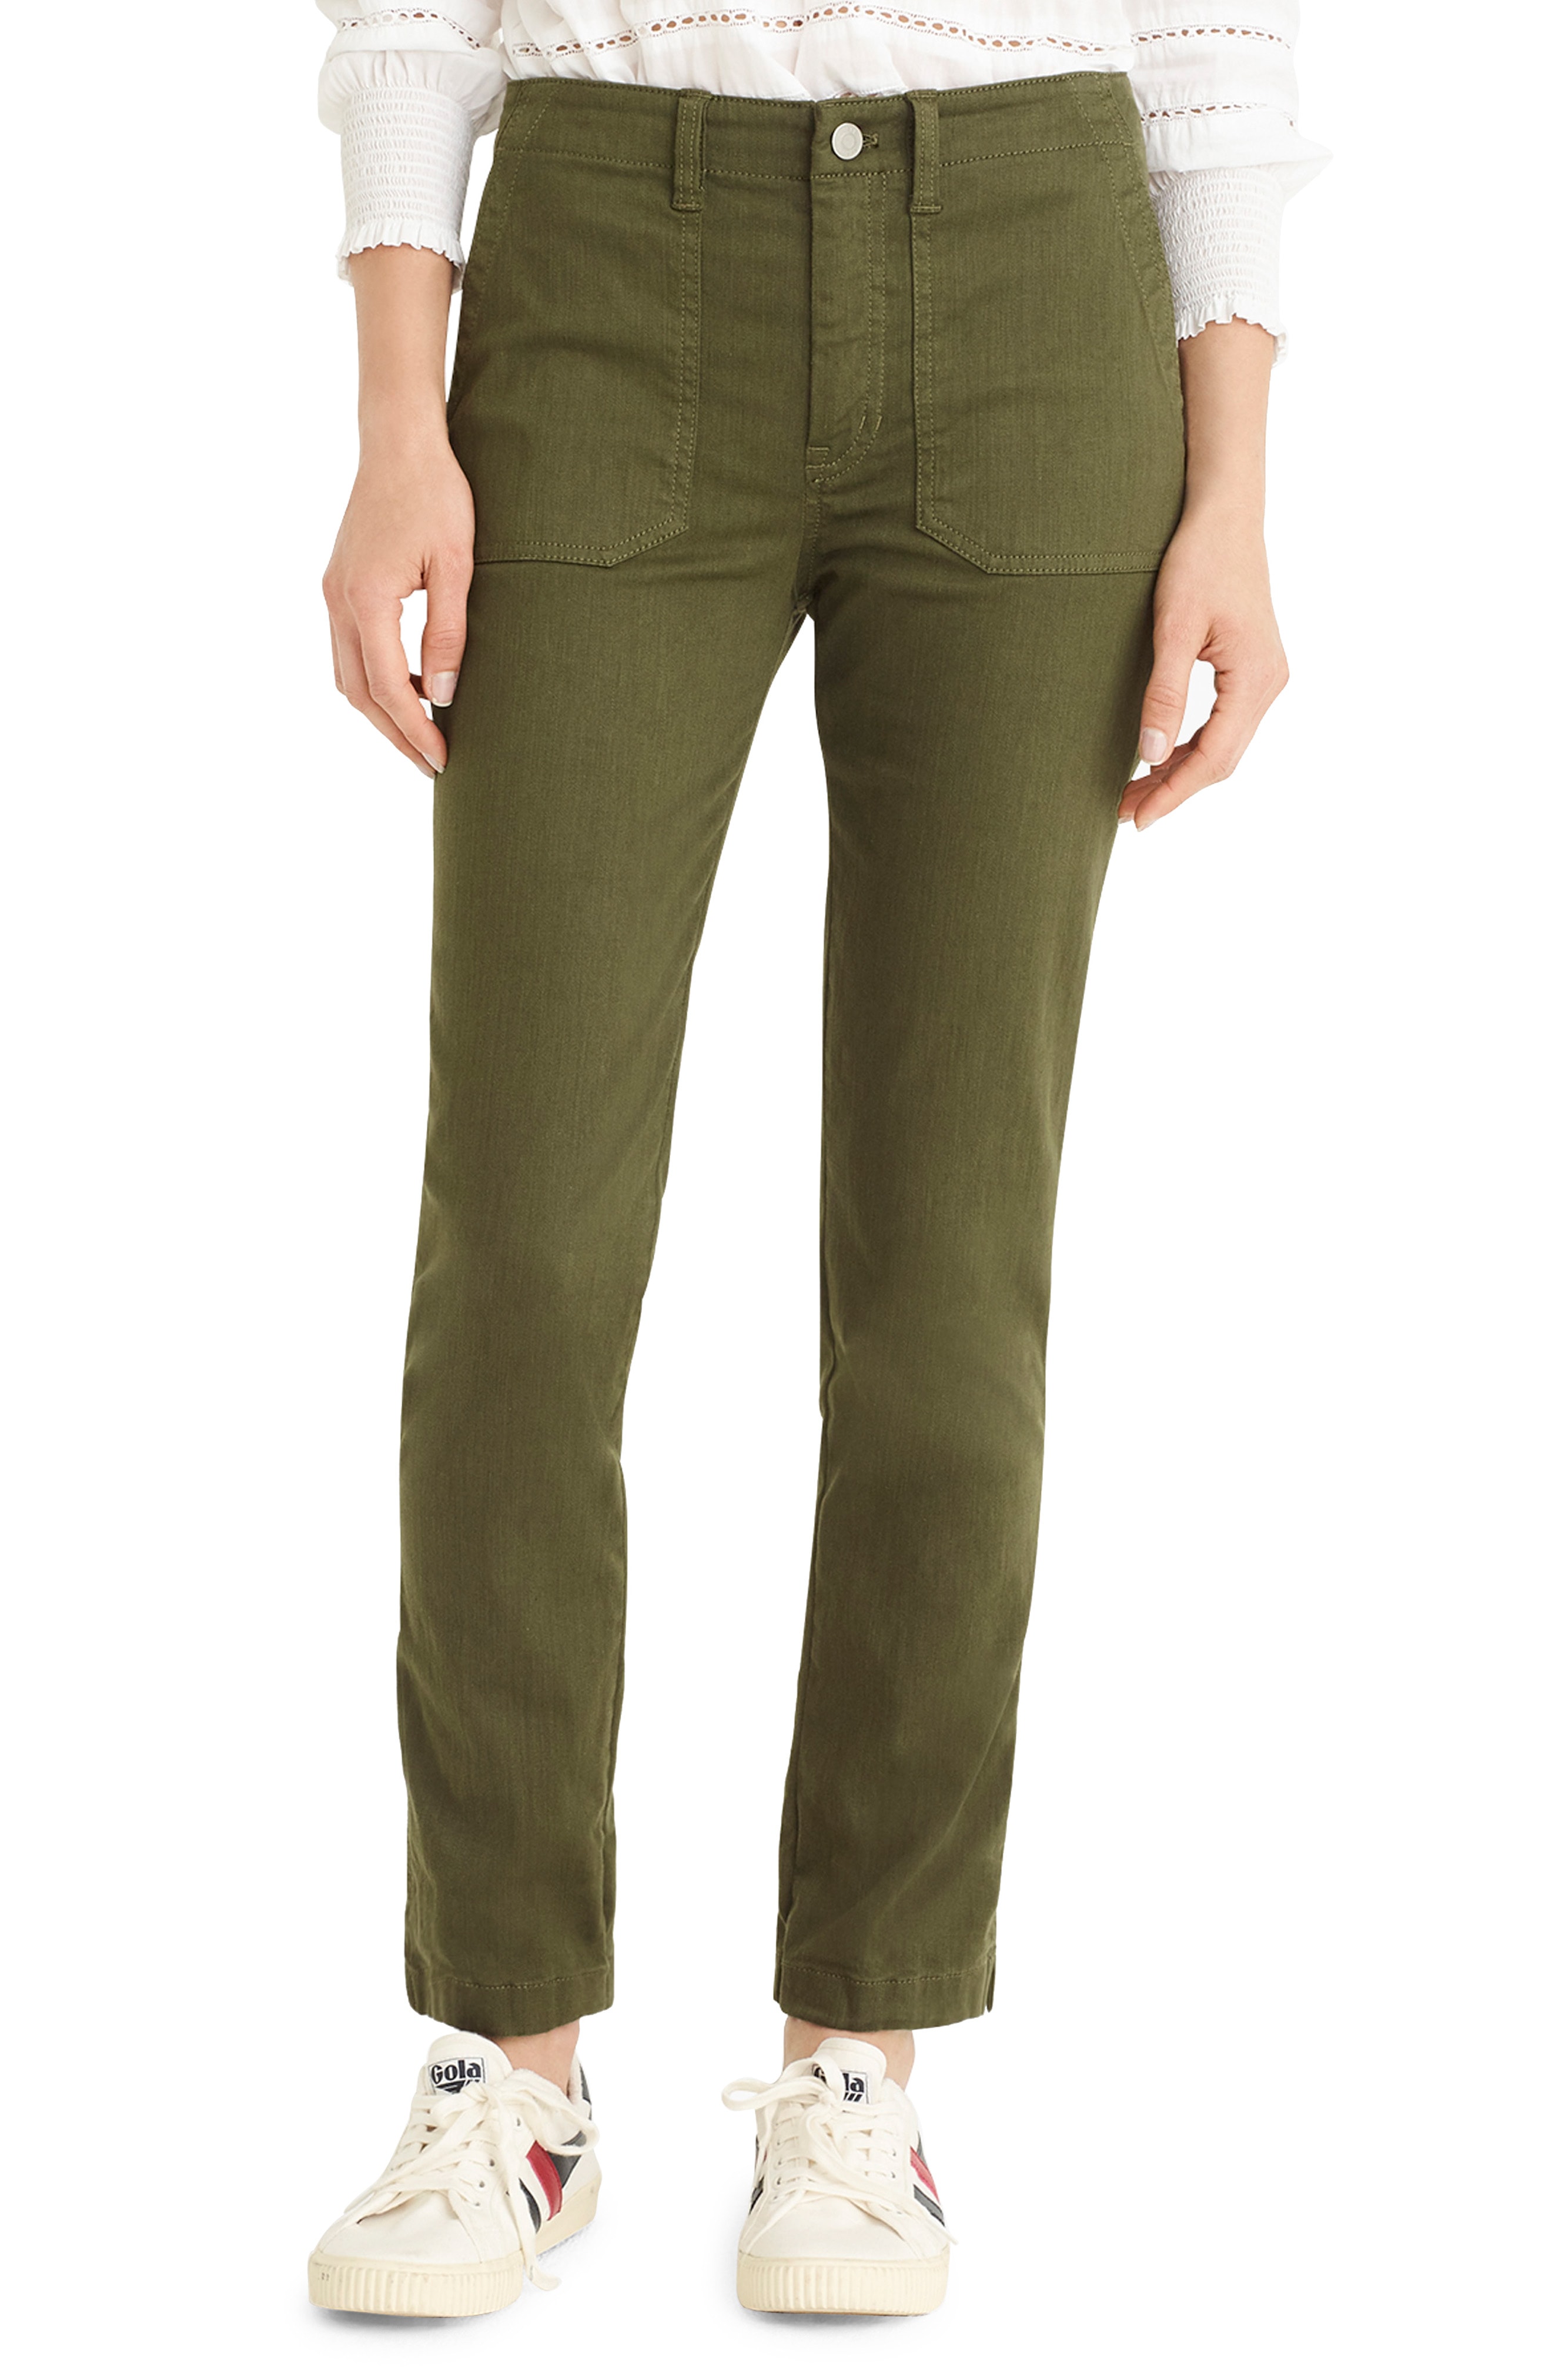 Women's Green Pants & Leggings | Nordstrom